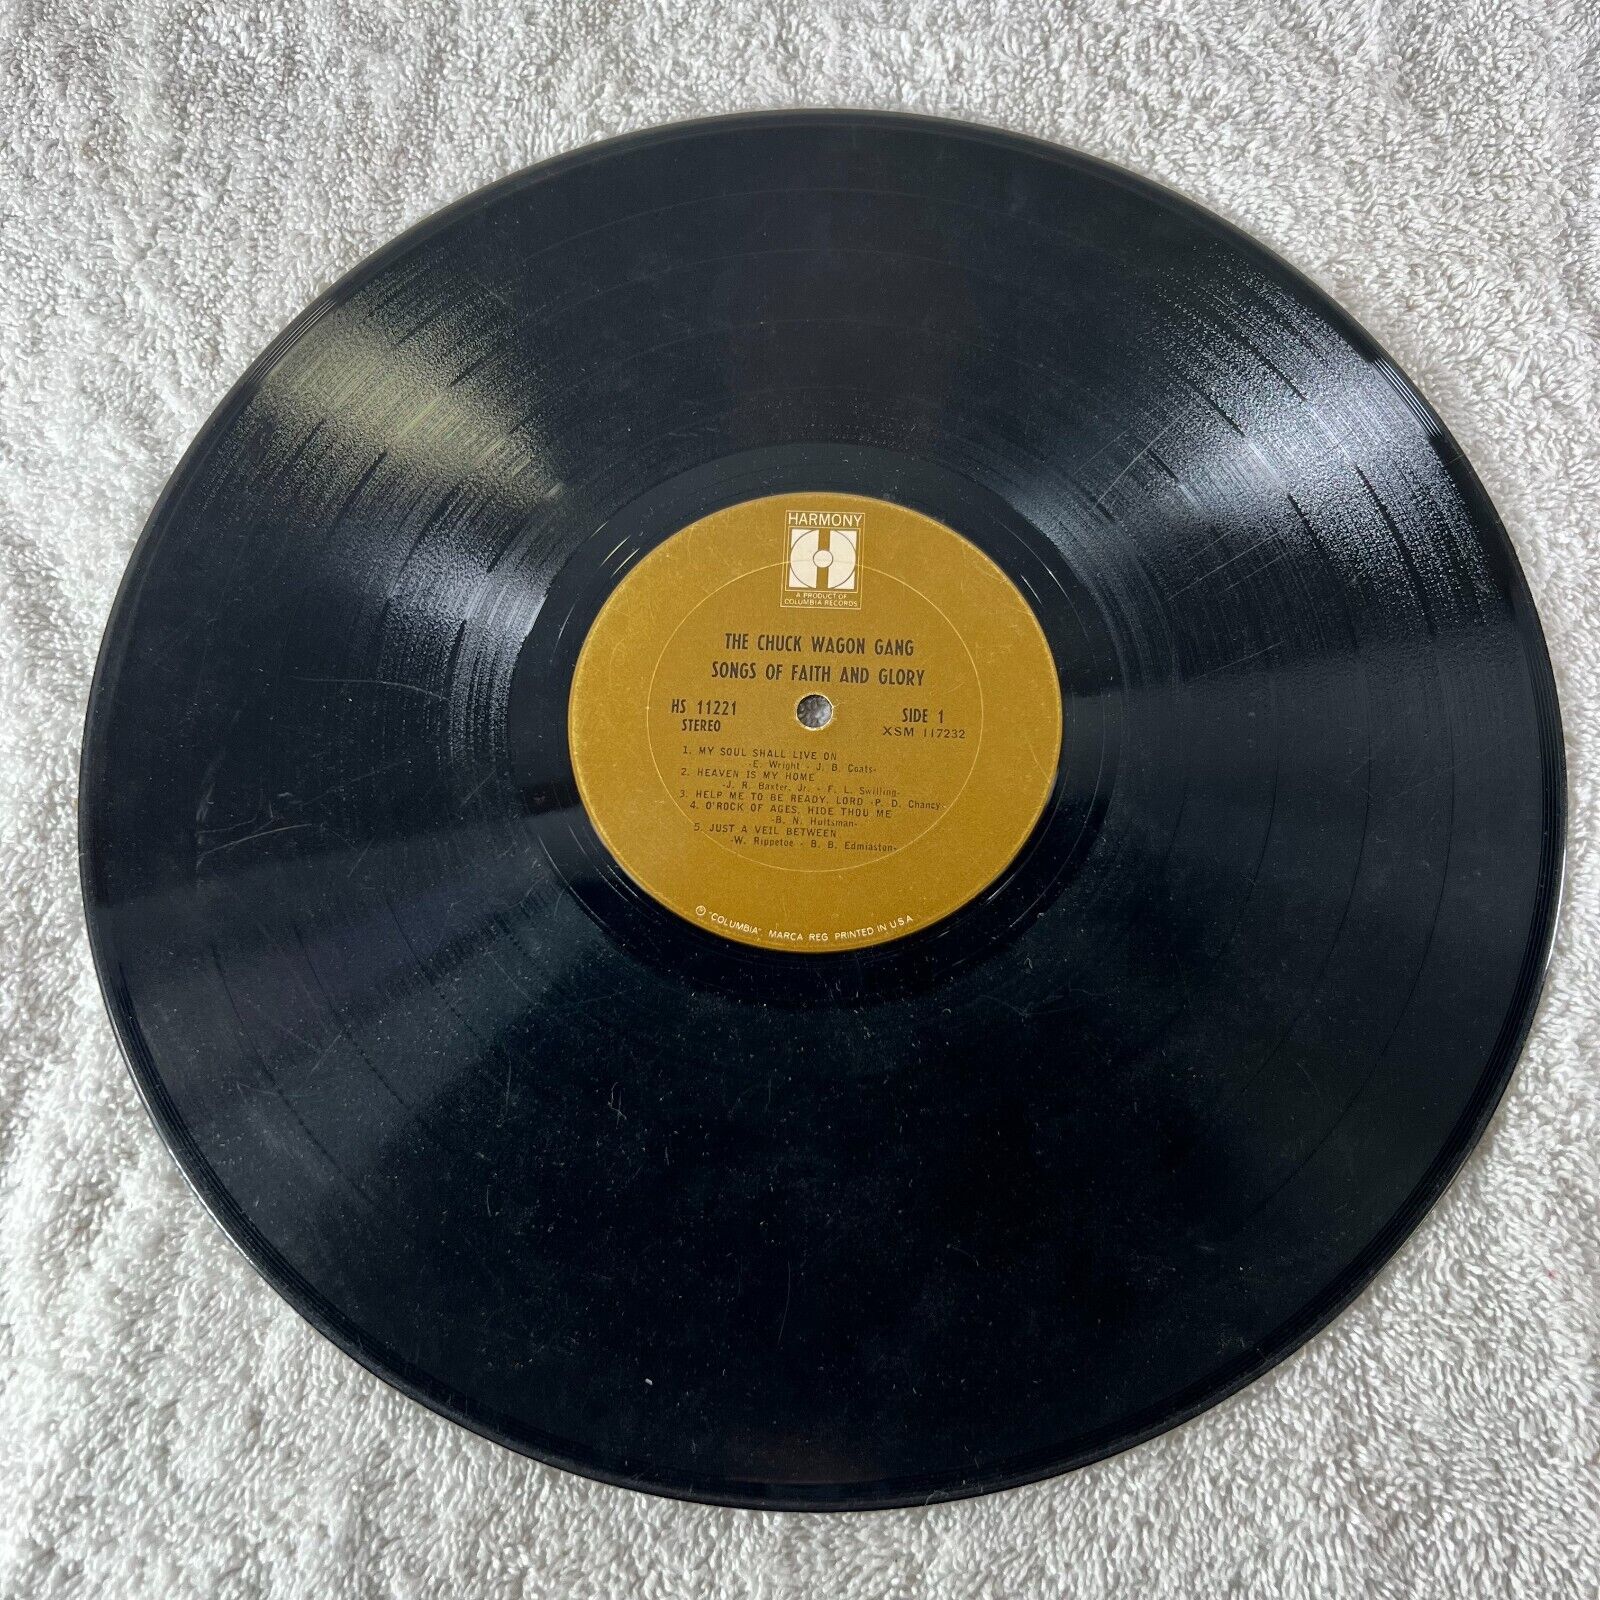 THE CHUCK WAGON GANG - Songs of Faith and Glory Vinyl LP HARMONY Shrink 1967